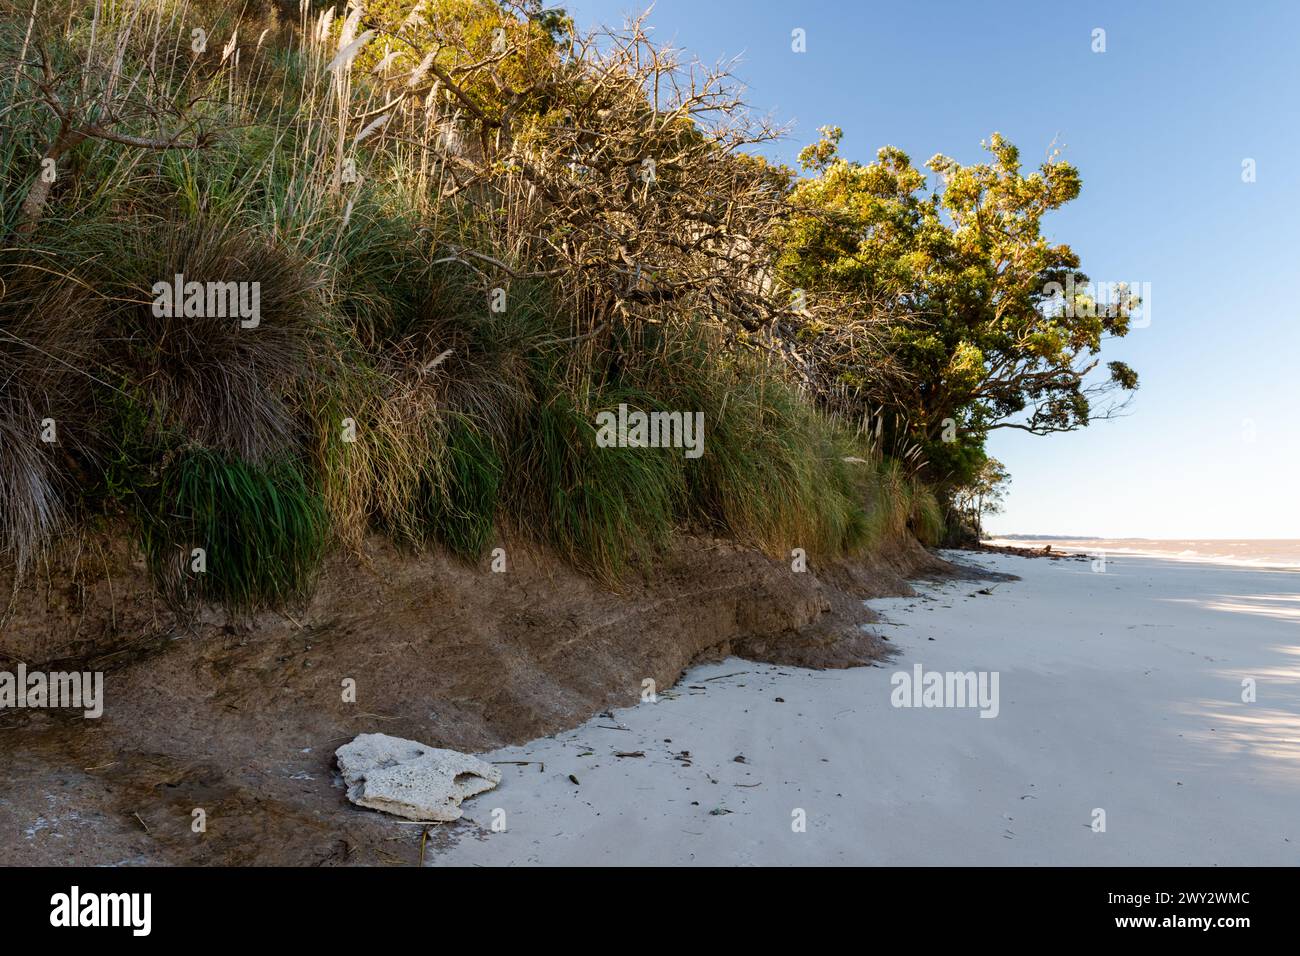 Ein felsiger Strand mit einem Baum im Hintergrund. Der Strand ist mit Sand bedeckt und der Baum ist hoch Stockfoto